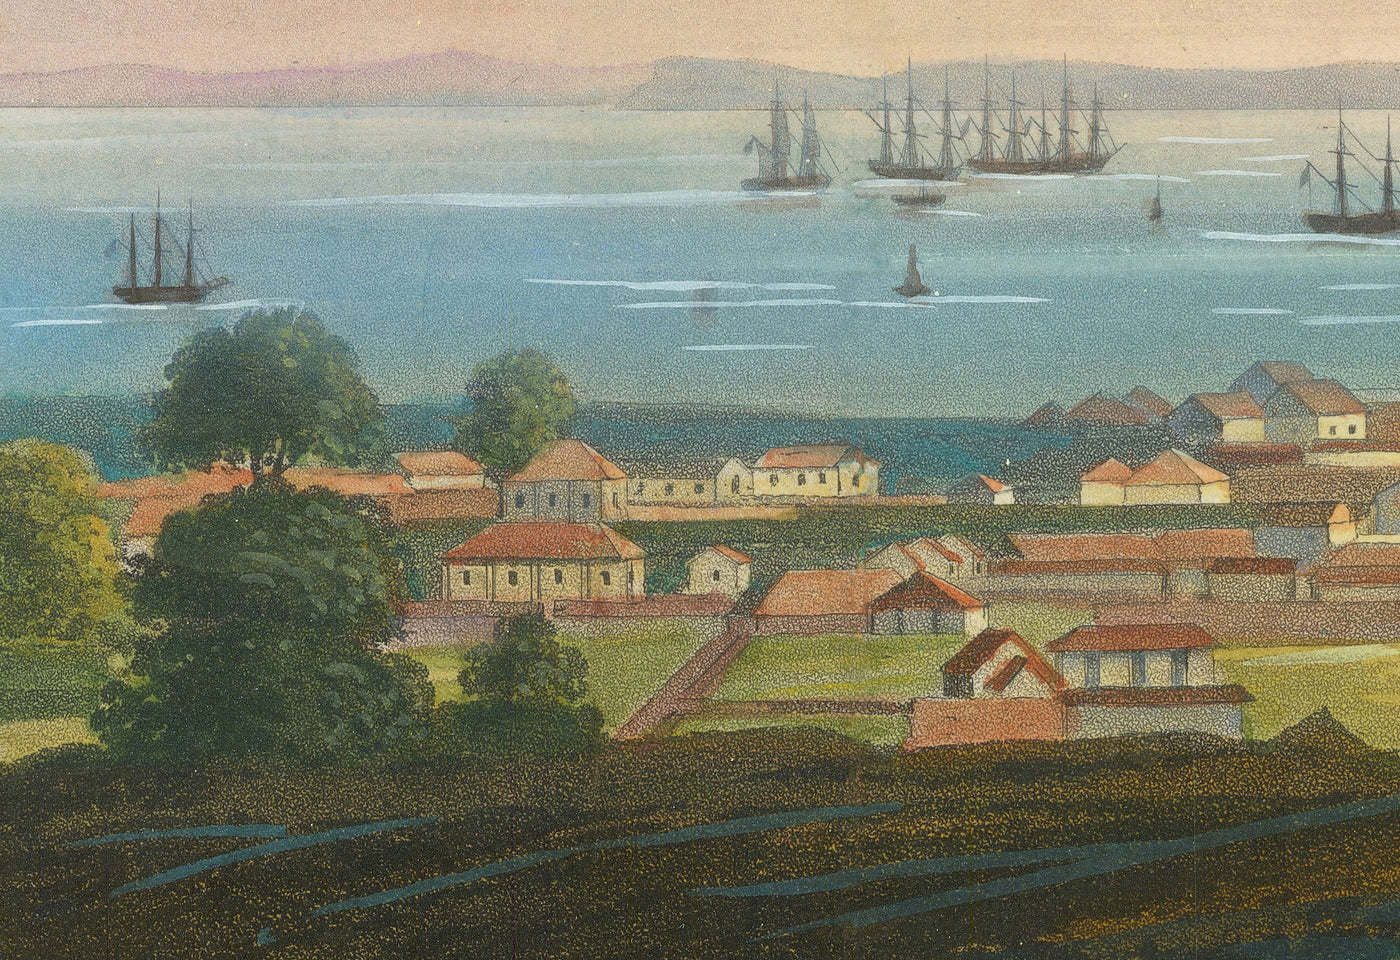 Carte ancienne rare de Singapour en 1828 par Robert Elliot - Colonie britannique, détroit de Singapour, baie de la Marina, centre-ville